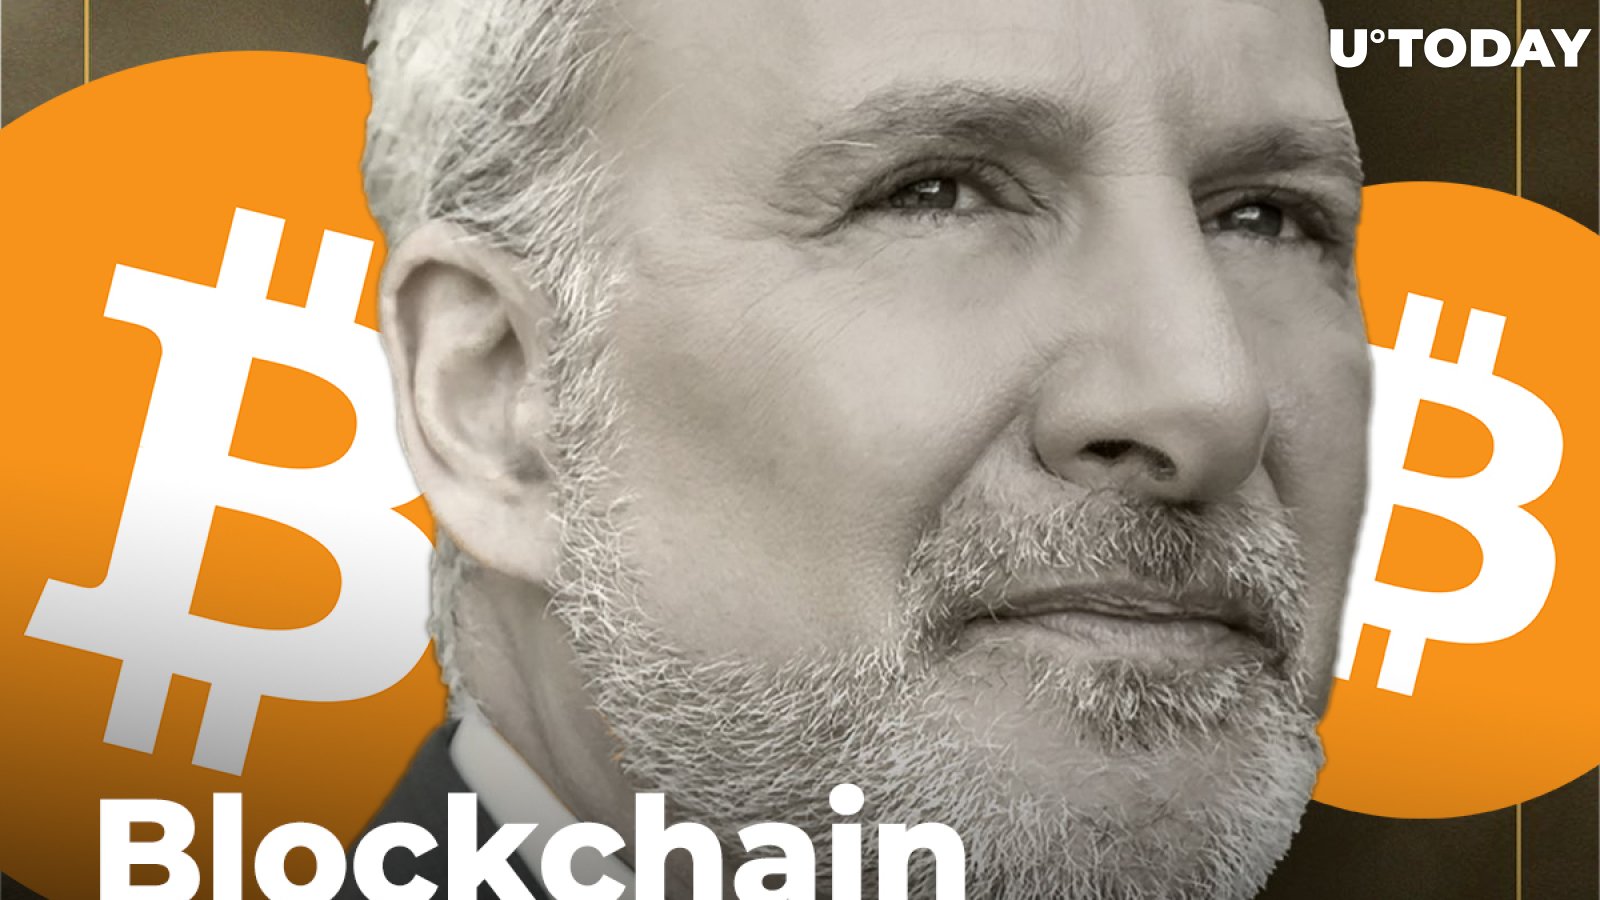 Peter Schiff Slams Idea of Bitcoin Value Based on Blockchain